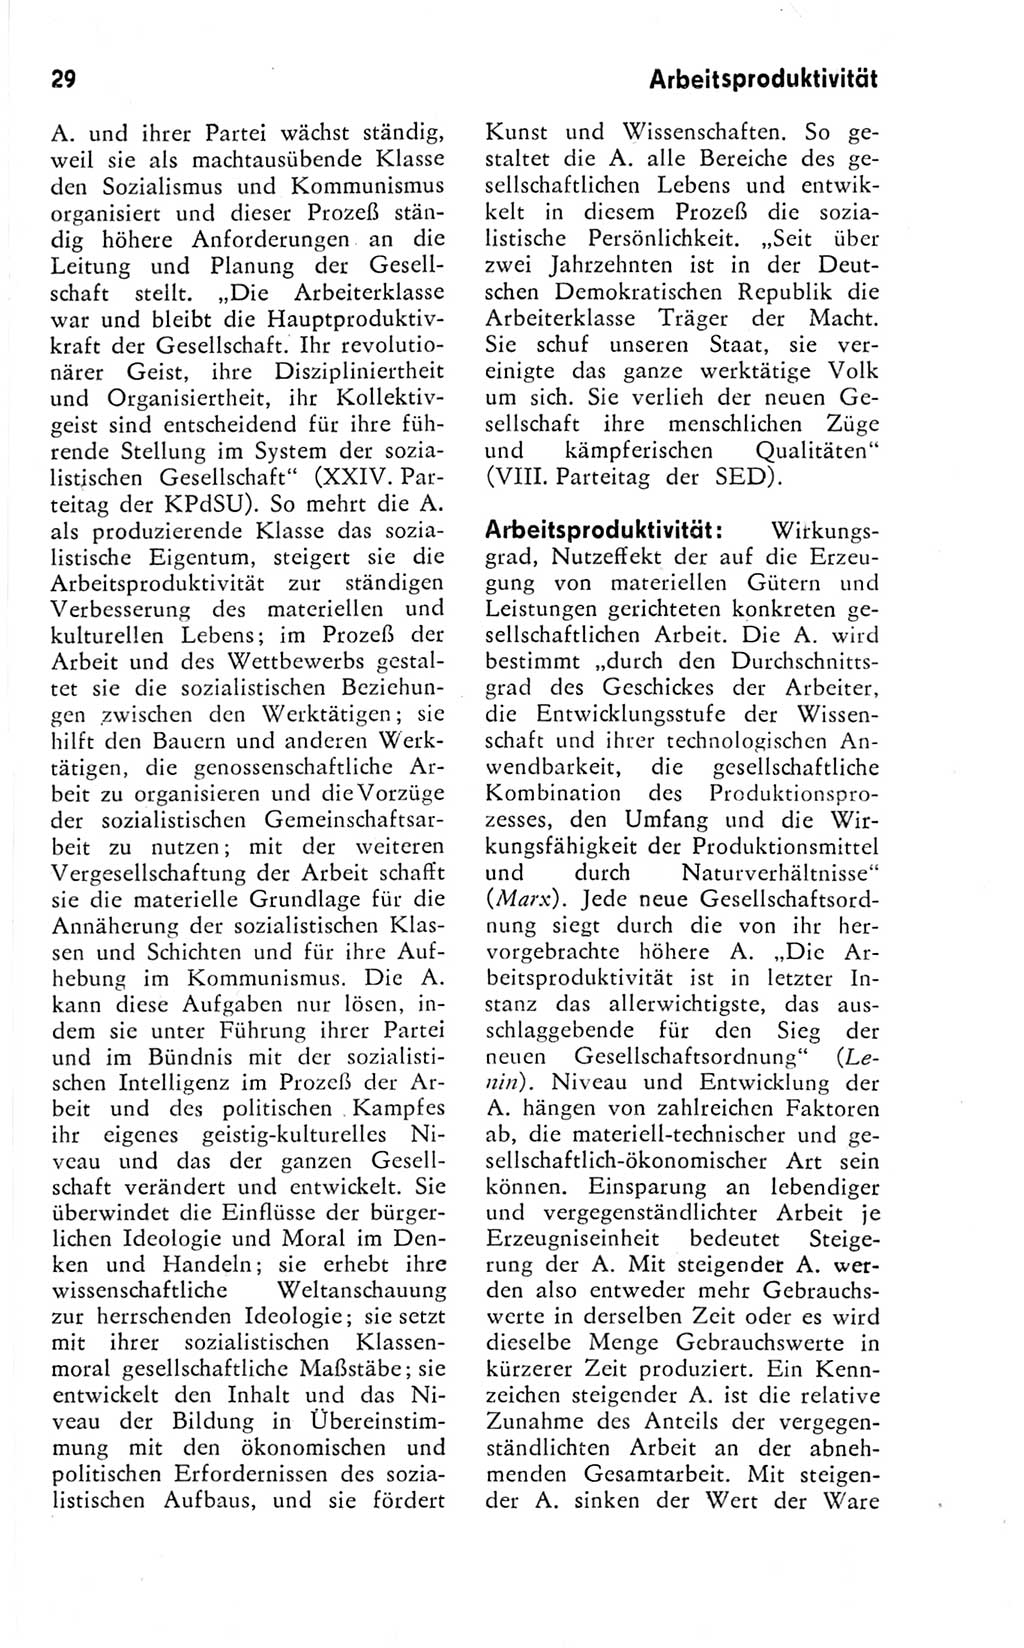 Kleines Wörterbuch der marxistisch-leninistischen Philosophie [Deutsche Demokratische Republik (DDR)] 1974, Seite 29 (Kl. Wb. ML Phil. DDR 1974, S. 29)